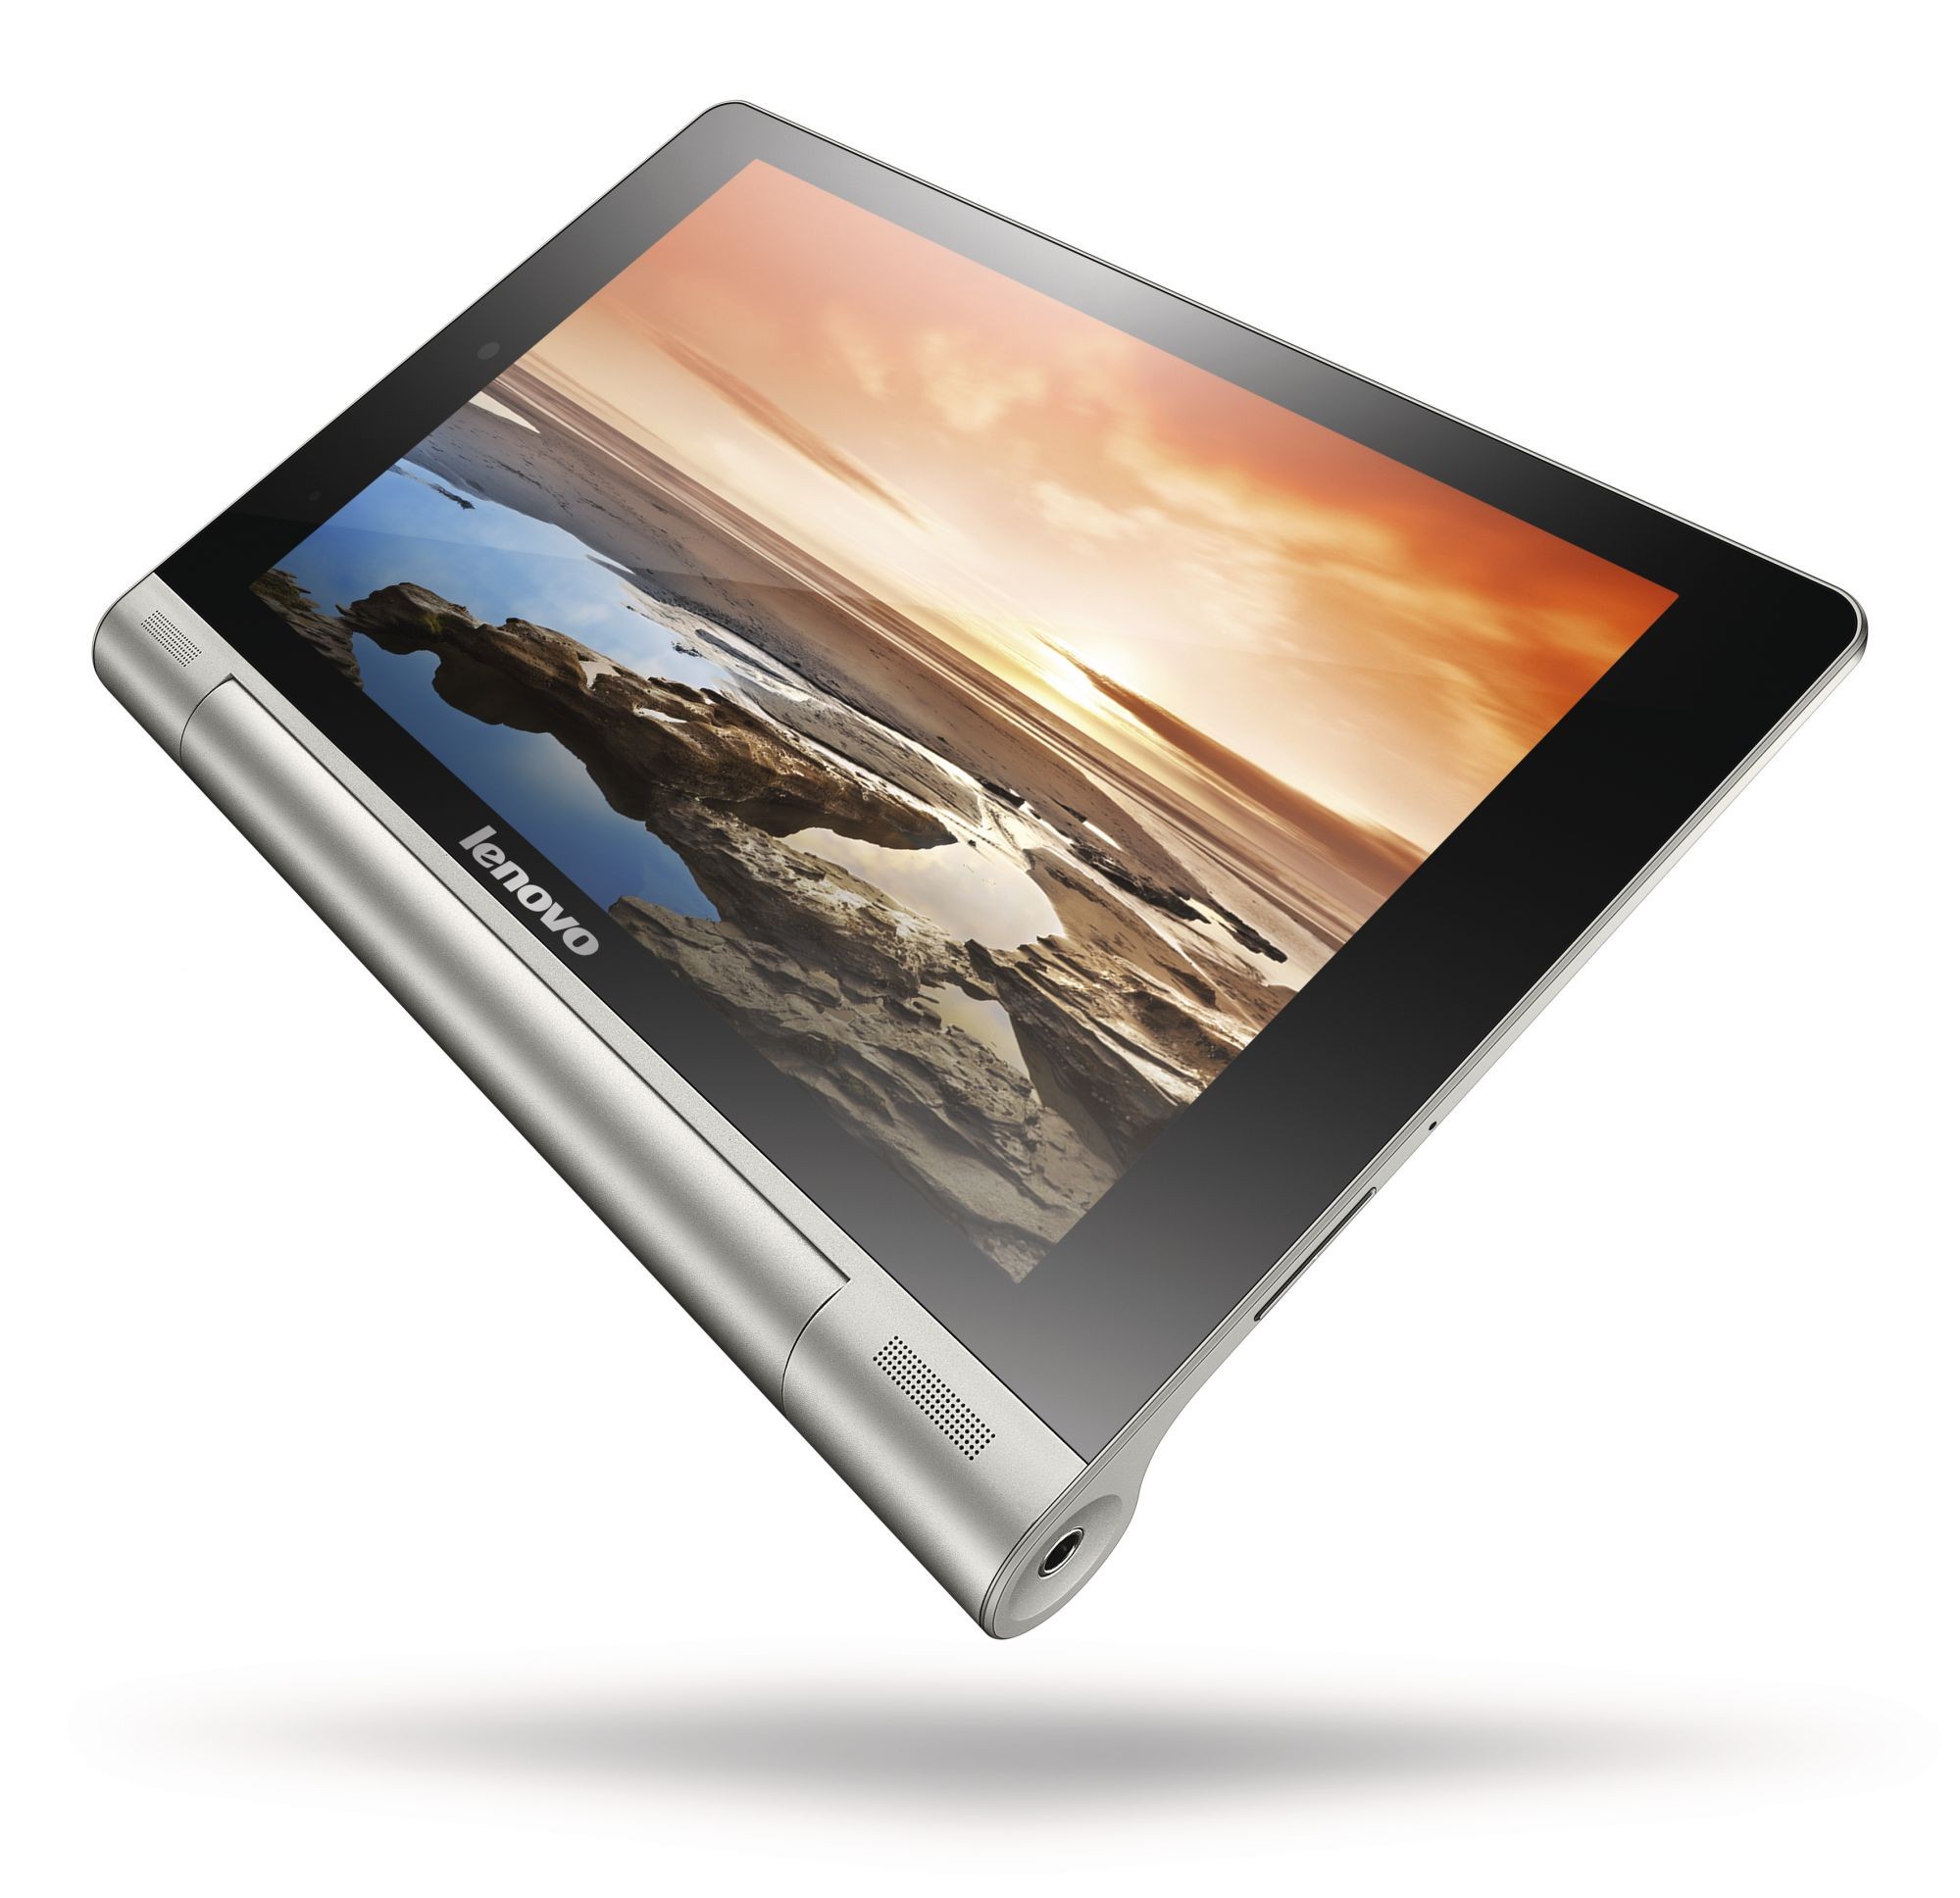 Купить планшет во владивостоке. Планшет Lenovo Yoga Tablet 8 3 1gb 16gb. Планшет Lenovo Yoga Tablet 8 16gb 3g. Lenovo Yoga Tablet 10 b8000. Lenovo Yoga планшет 10 дюймов.